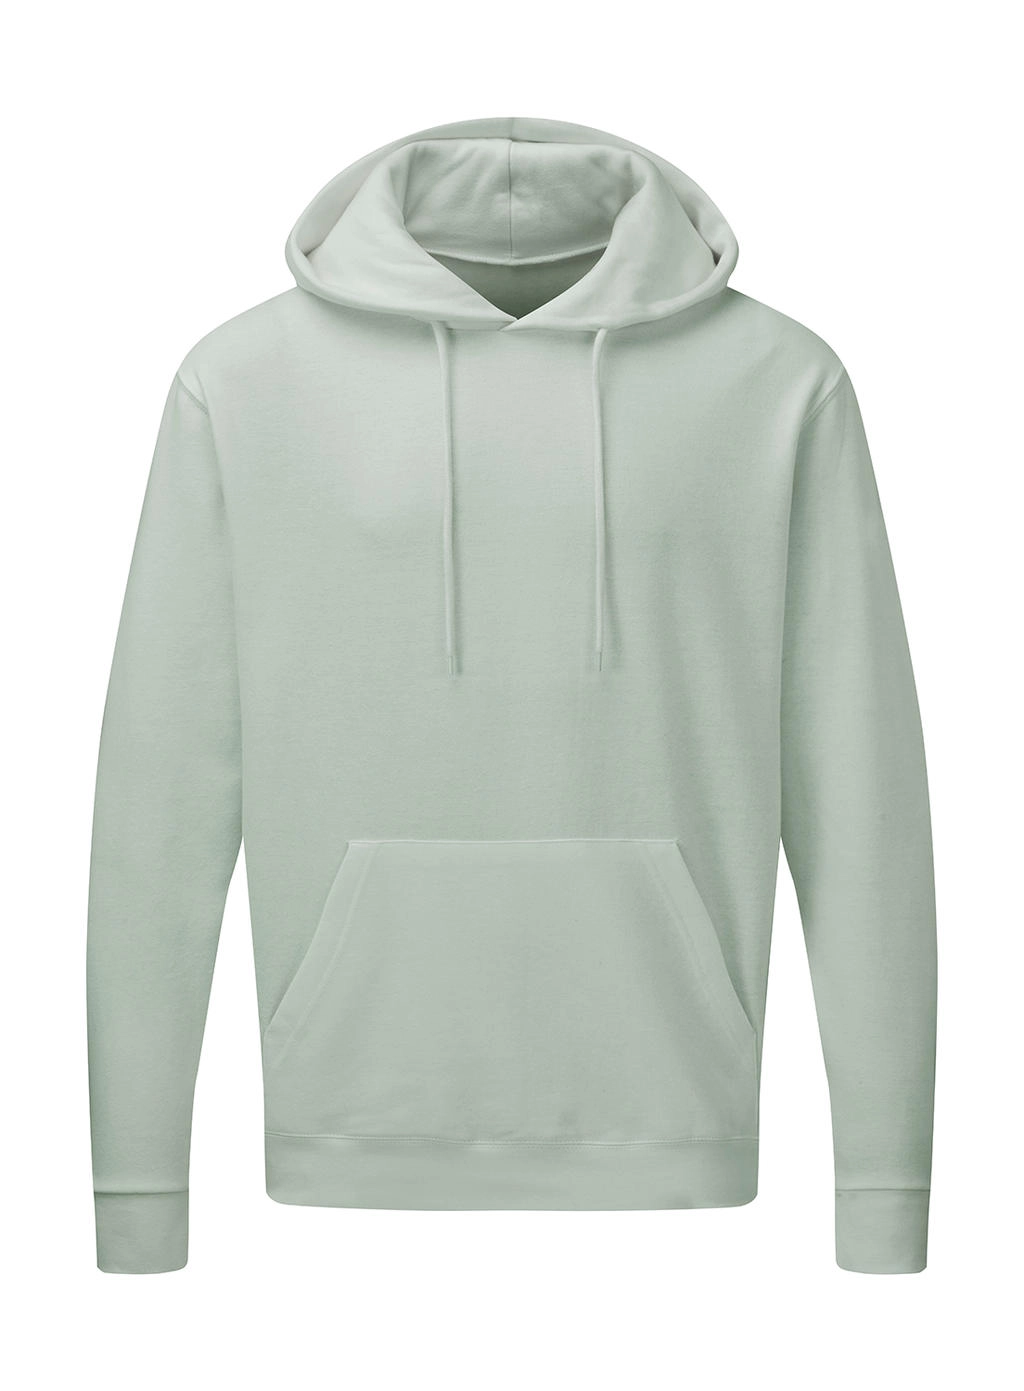 Hooded Sweatshirt Men zum Besticken und Bedrucken in der Farbe Mercury Grey mit Ihren Logo, Schriftzug oder Motiv.